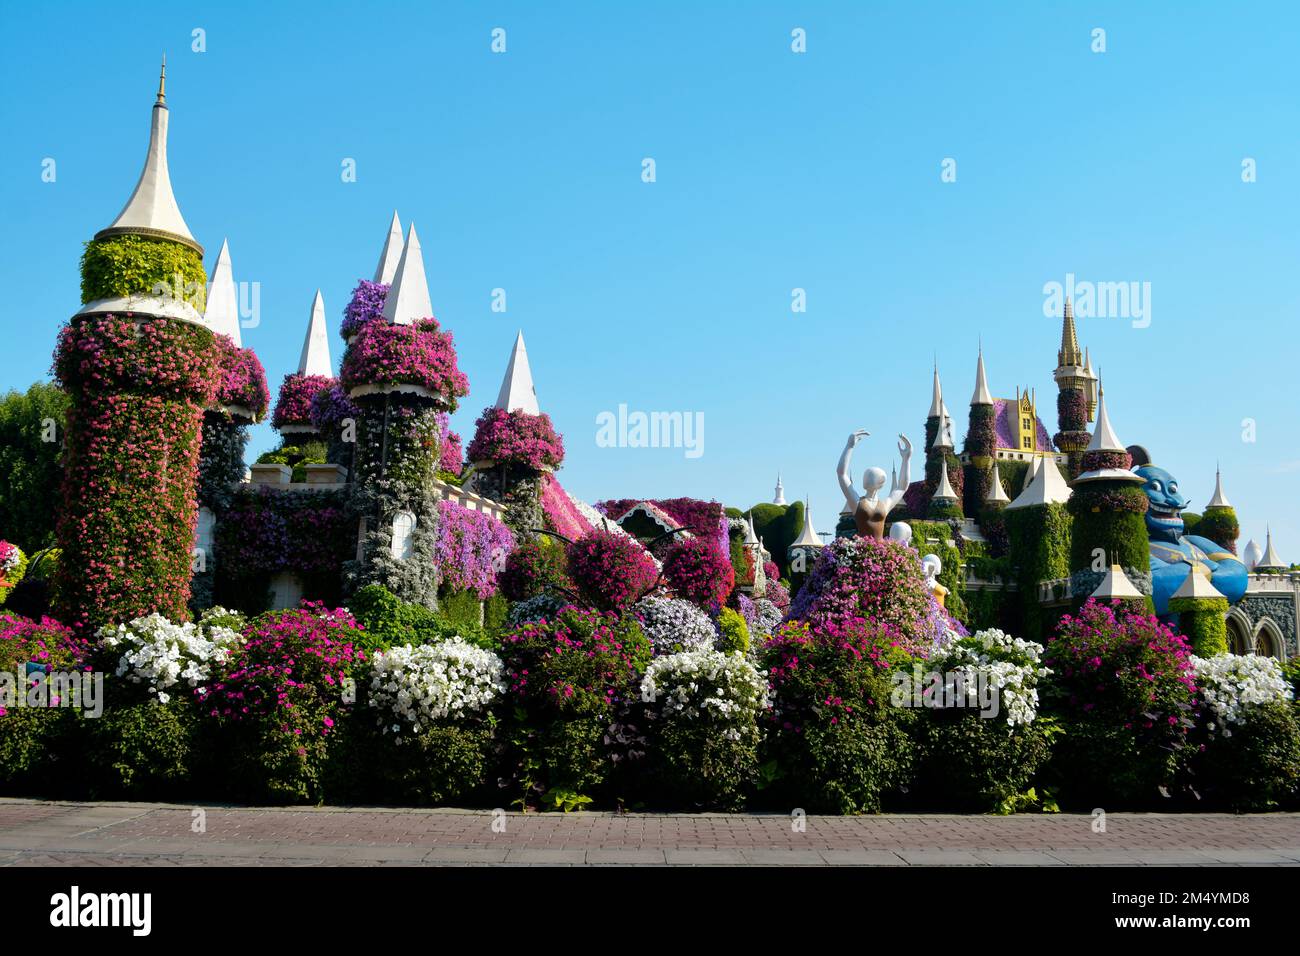 Dubai, Vereinigte Arabische Emirate (VAE), Dezember 2022: Dubai Miracle Garden, ein wunderschöner Blumengarten mit riesigen Blumenstrukturen. Stockfoto